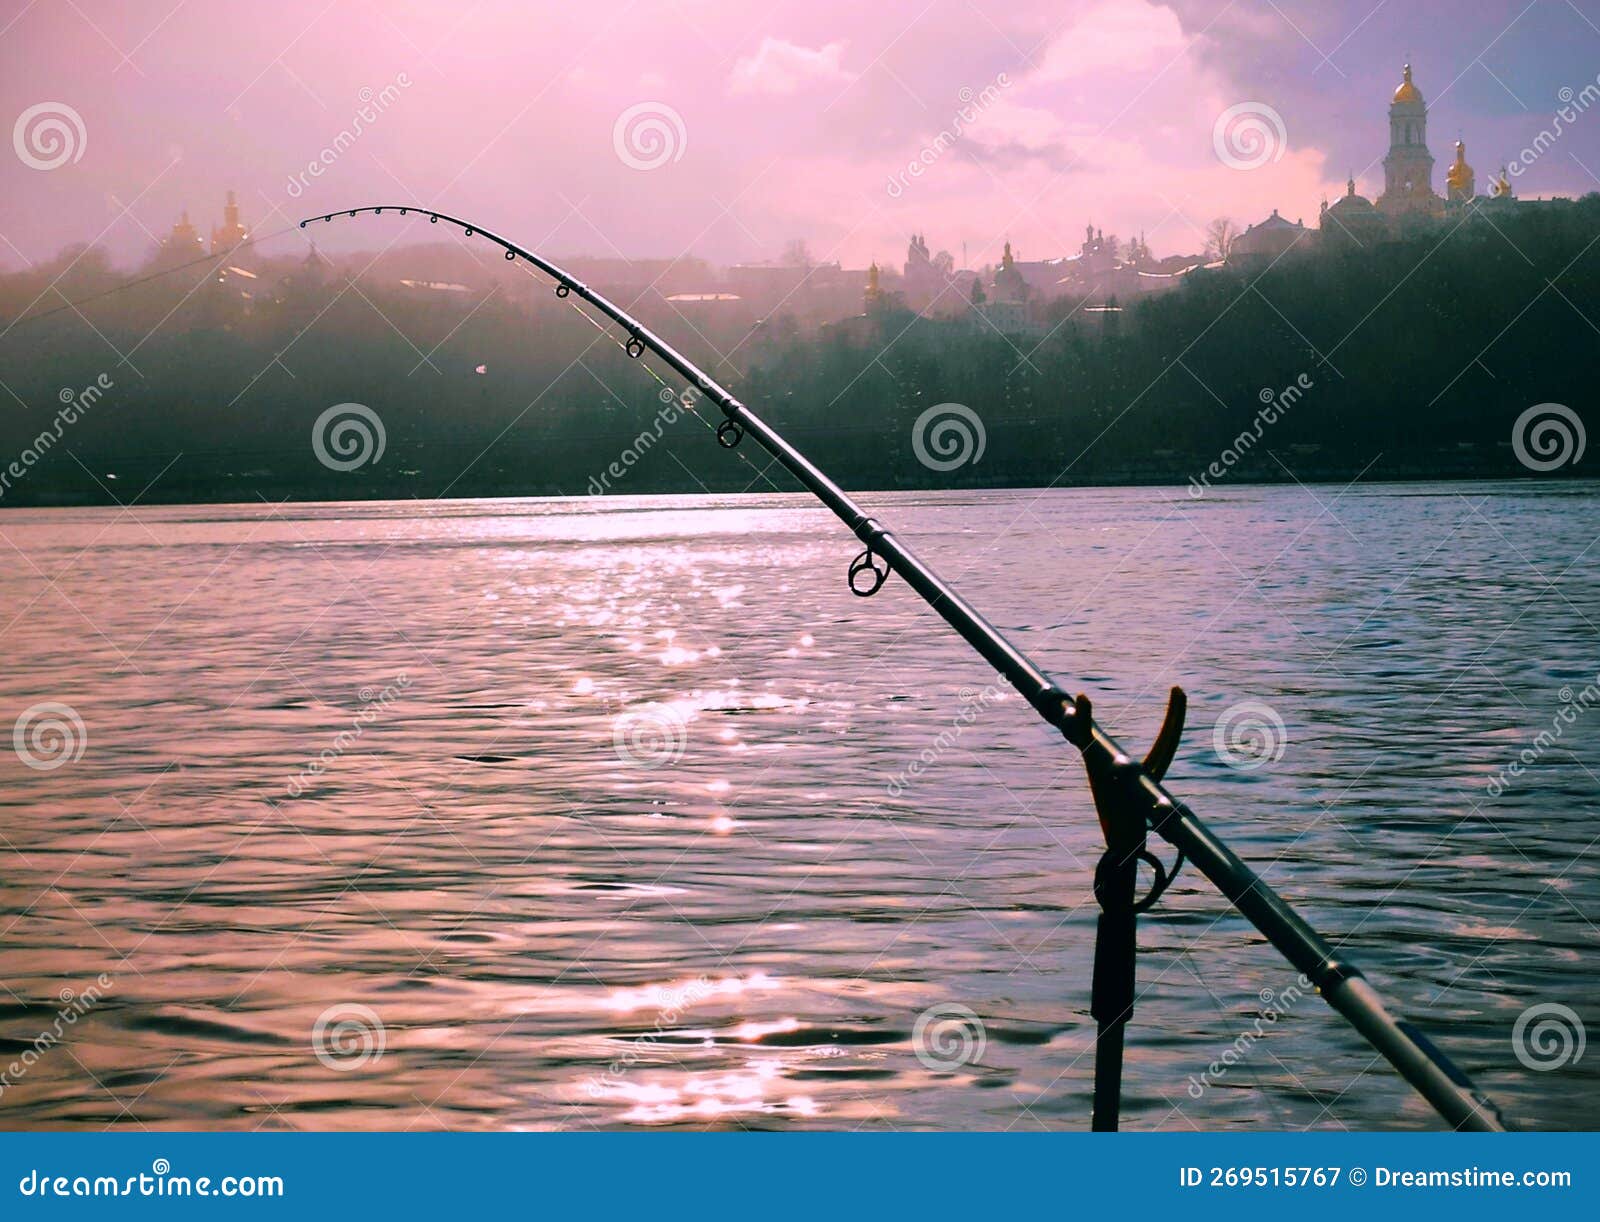 https://thumbs.dreamstime.com/z/fishing-feeder-rod-dnipro-river-fishing-feeder-rod-dnipro-river-kiev-ukraine-269515767.jpg